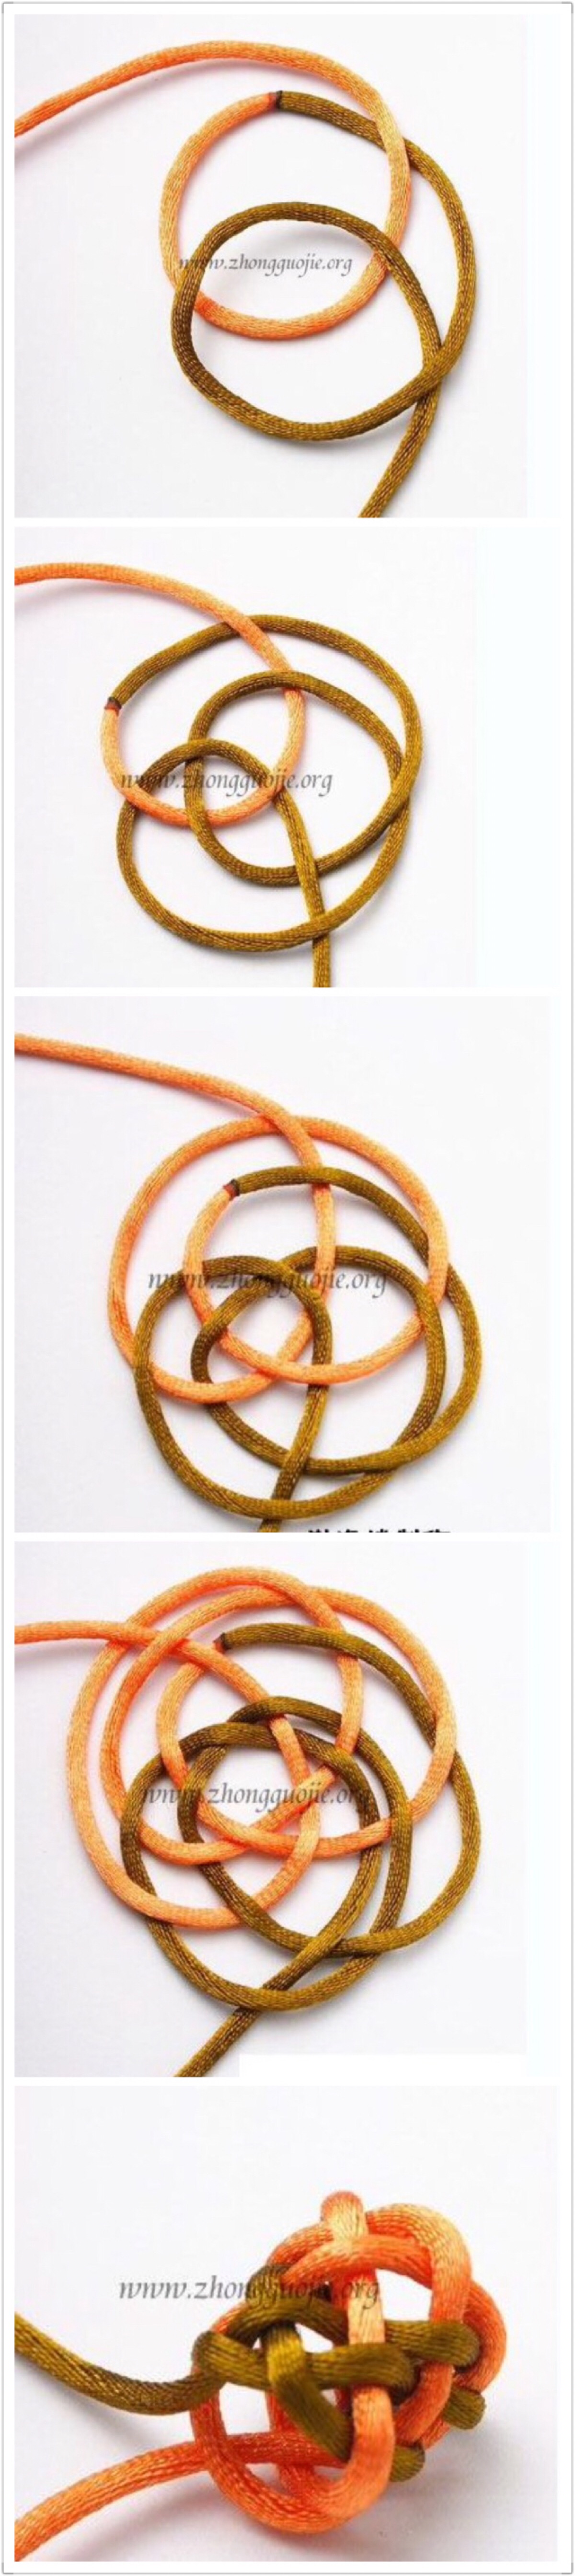 藏式菠萝结编织教程图片